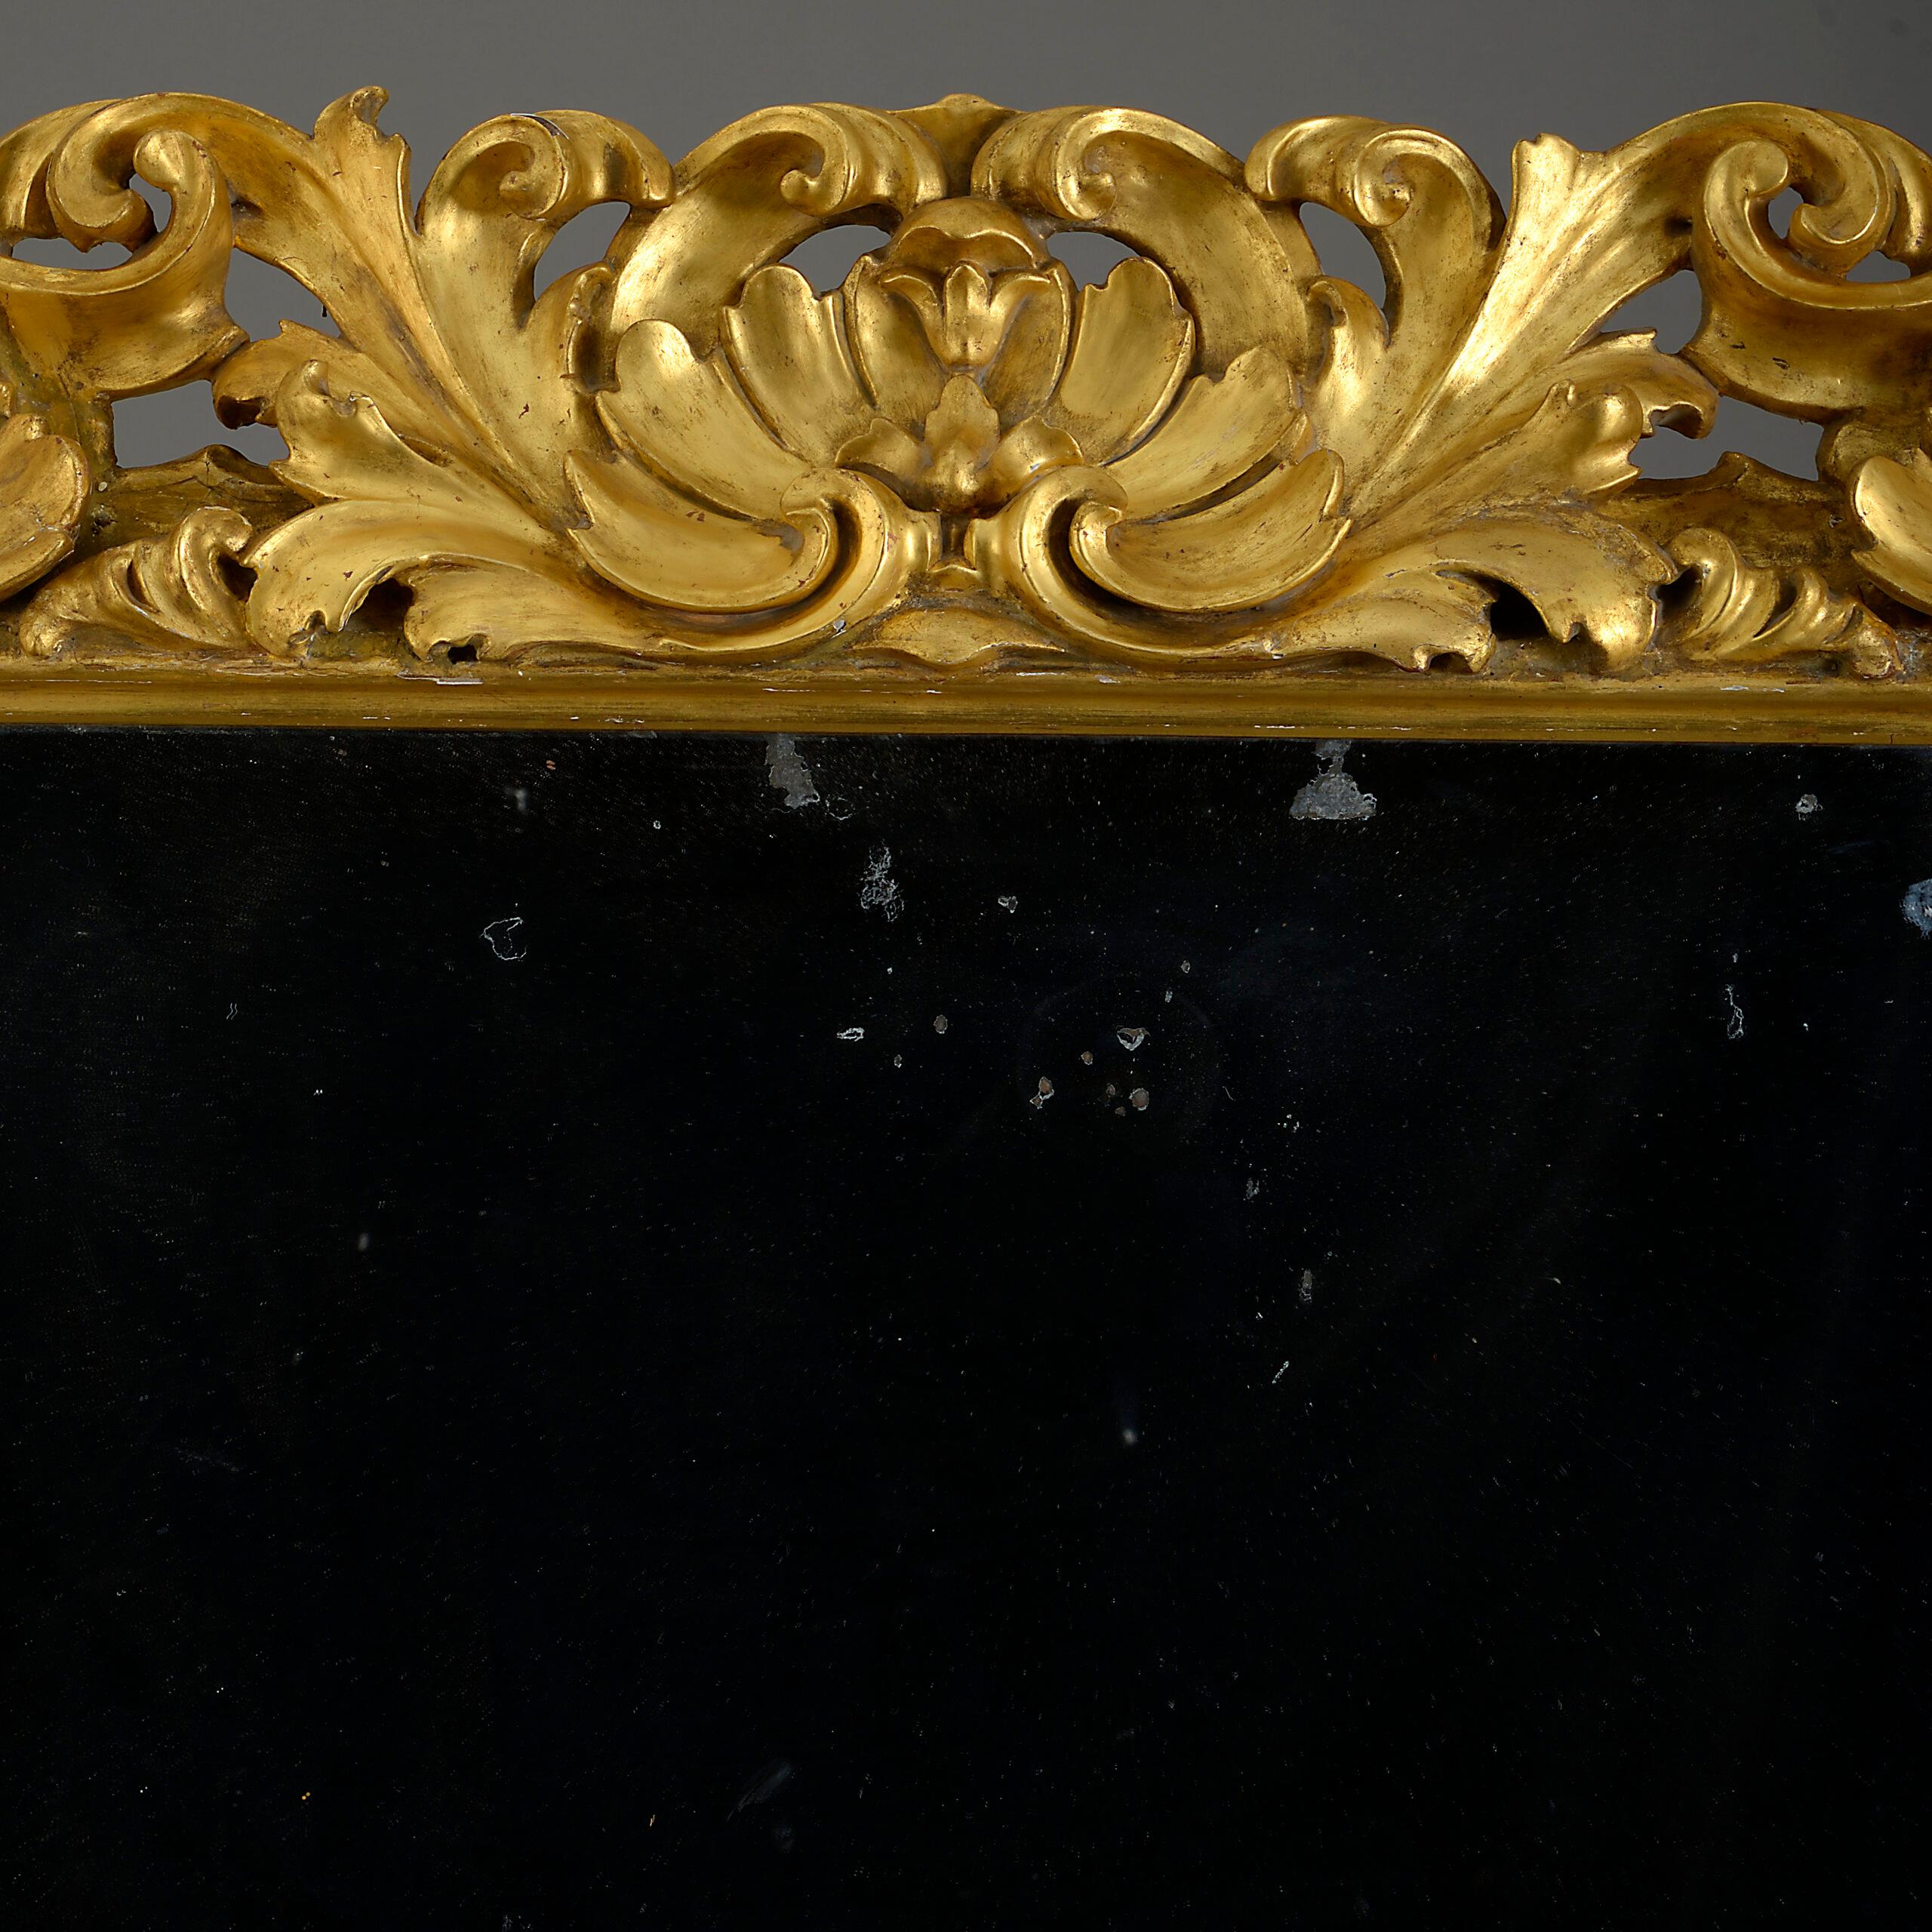 Ein großer Barockspiegel aus dem frühen achtzehnten Jahrhundert, dessen reich geschnitzter Rahmen aus vergoldetem Blattwerk eine Quecksilberglasplatte aus der Zeit beherbergt

CIRCA 1700 Florenz

Abmessungen: 40,5 B x 4 T x 48,5 H Zoll
103 B x 10 T